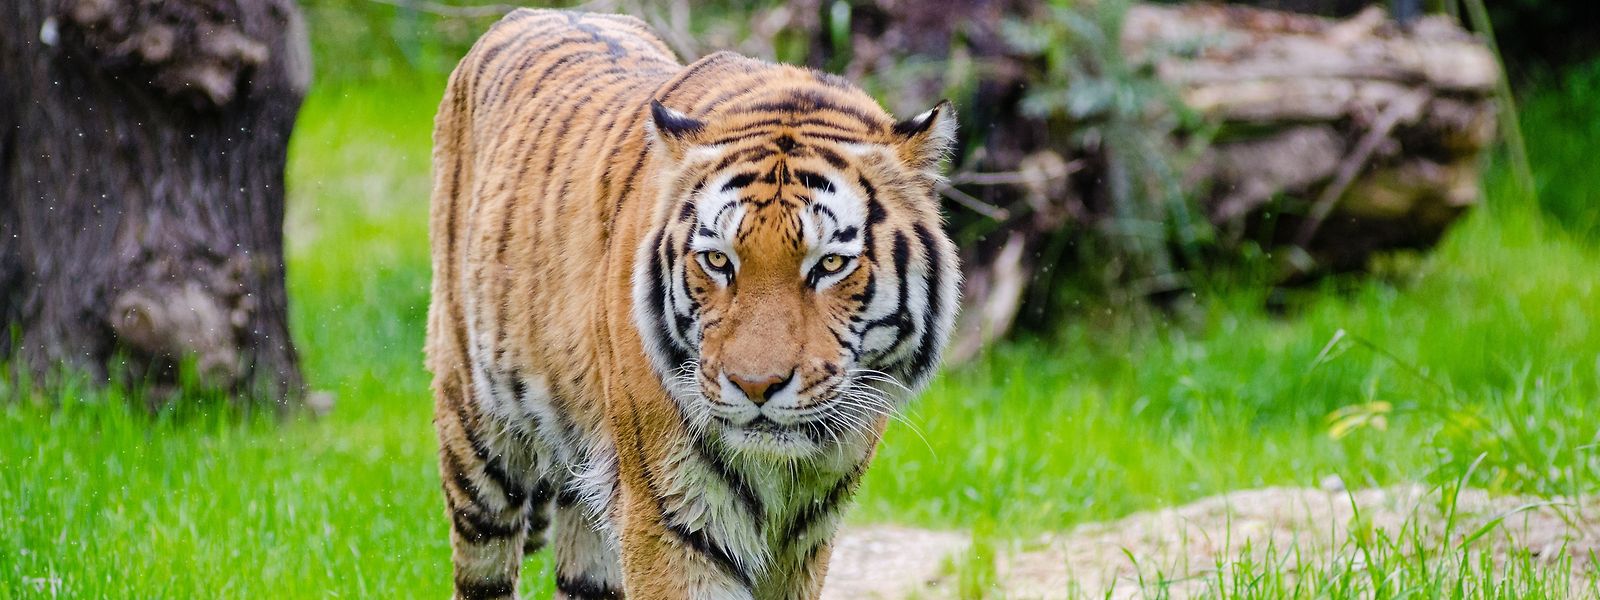 Rund eine Million Tier- und Pflanzenarten sind akut gefährdet. Der Tiger steht etwa seit Jahrzehnten auf einer Roten Liste der Weltnaturschutzunion für bedrohte Arten.